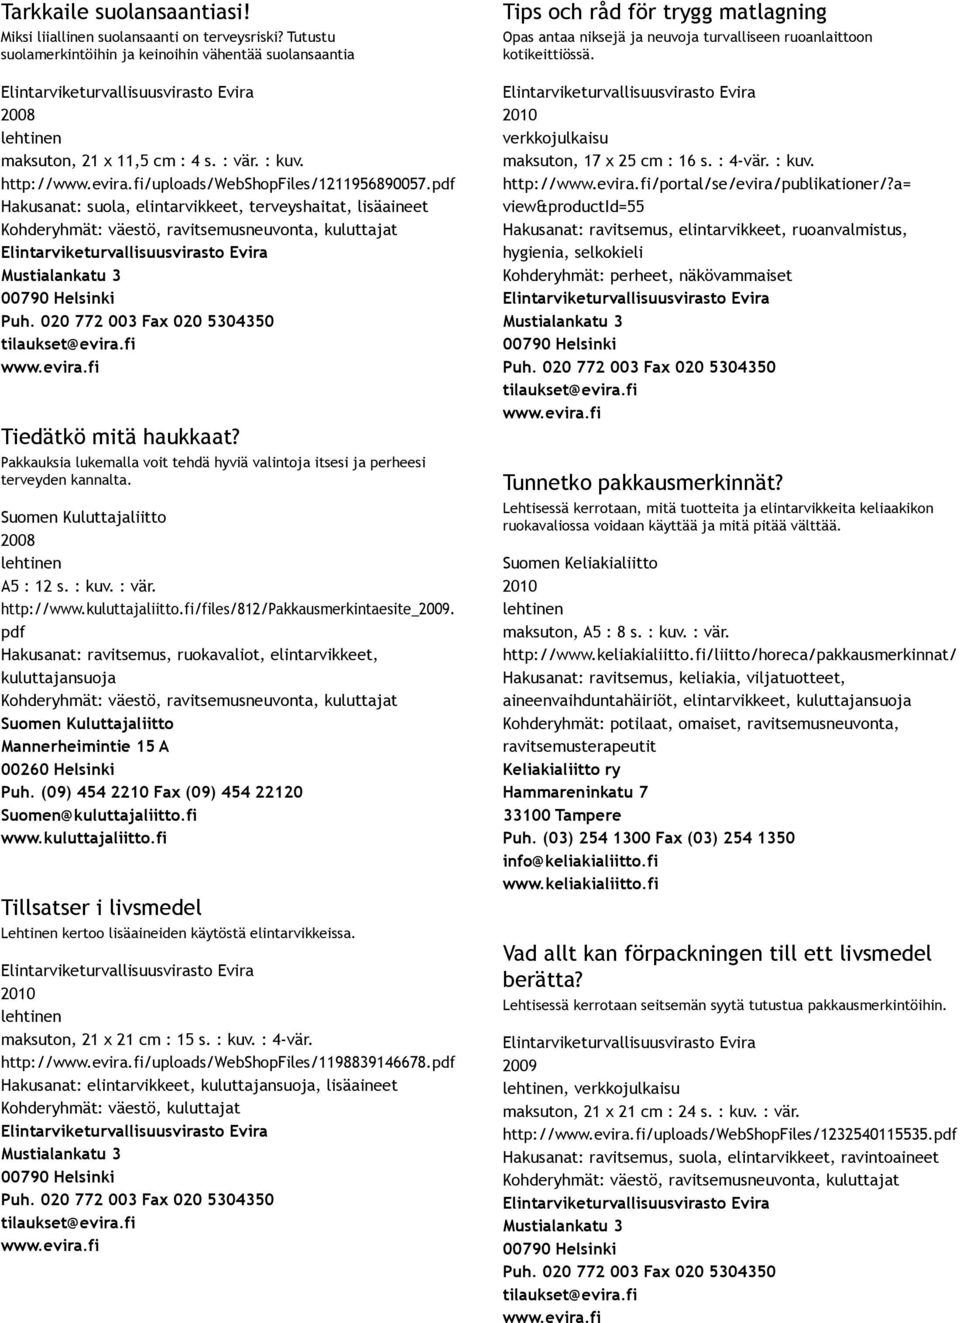 Suomen Kuluttajaliitto A5 : 12 s. : kuv. : vär. http://www.kuluttajaliitto.fi/files/812/pakkausmerkintaesite_.